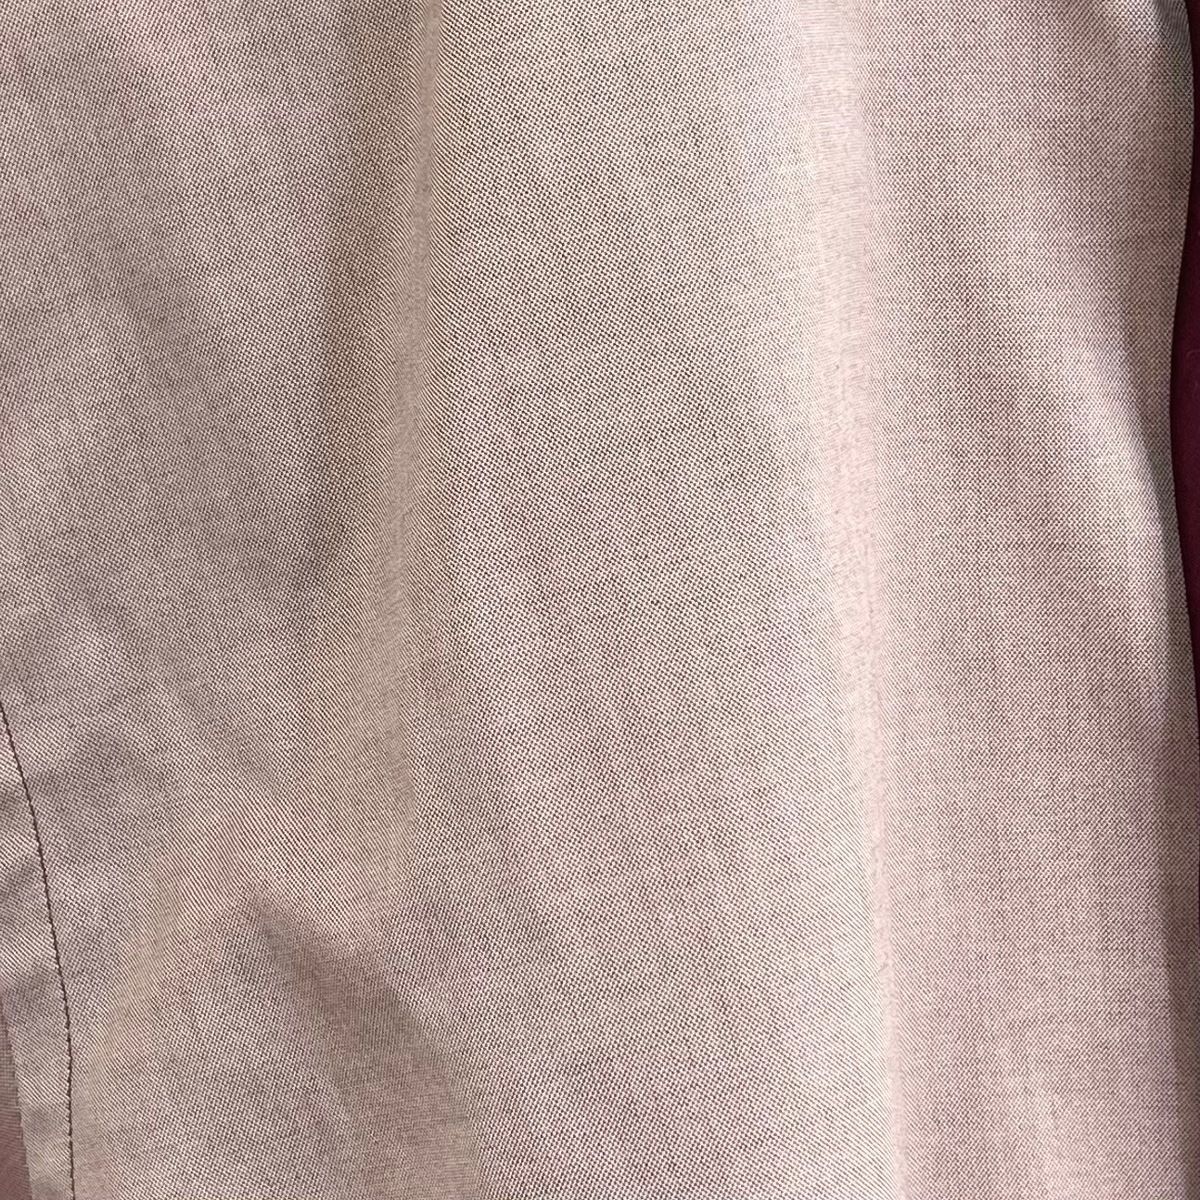 PRADA(プラダ) 長袖シャツ サイズ38 M メンズ美品 - ライトピンク×ボルドー